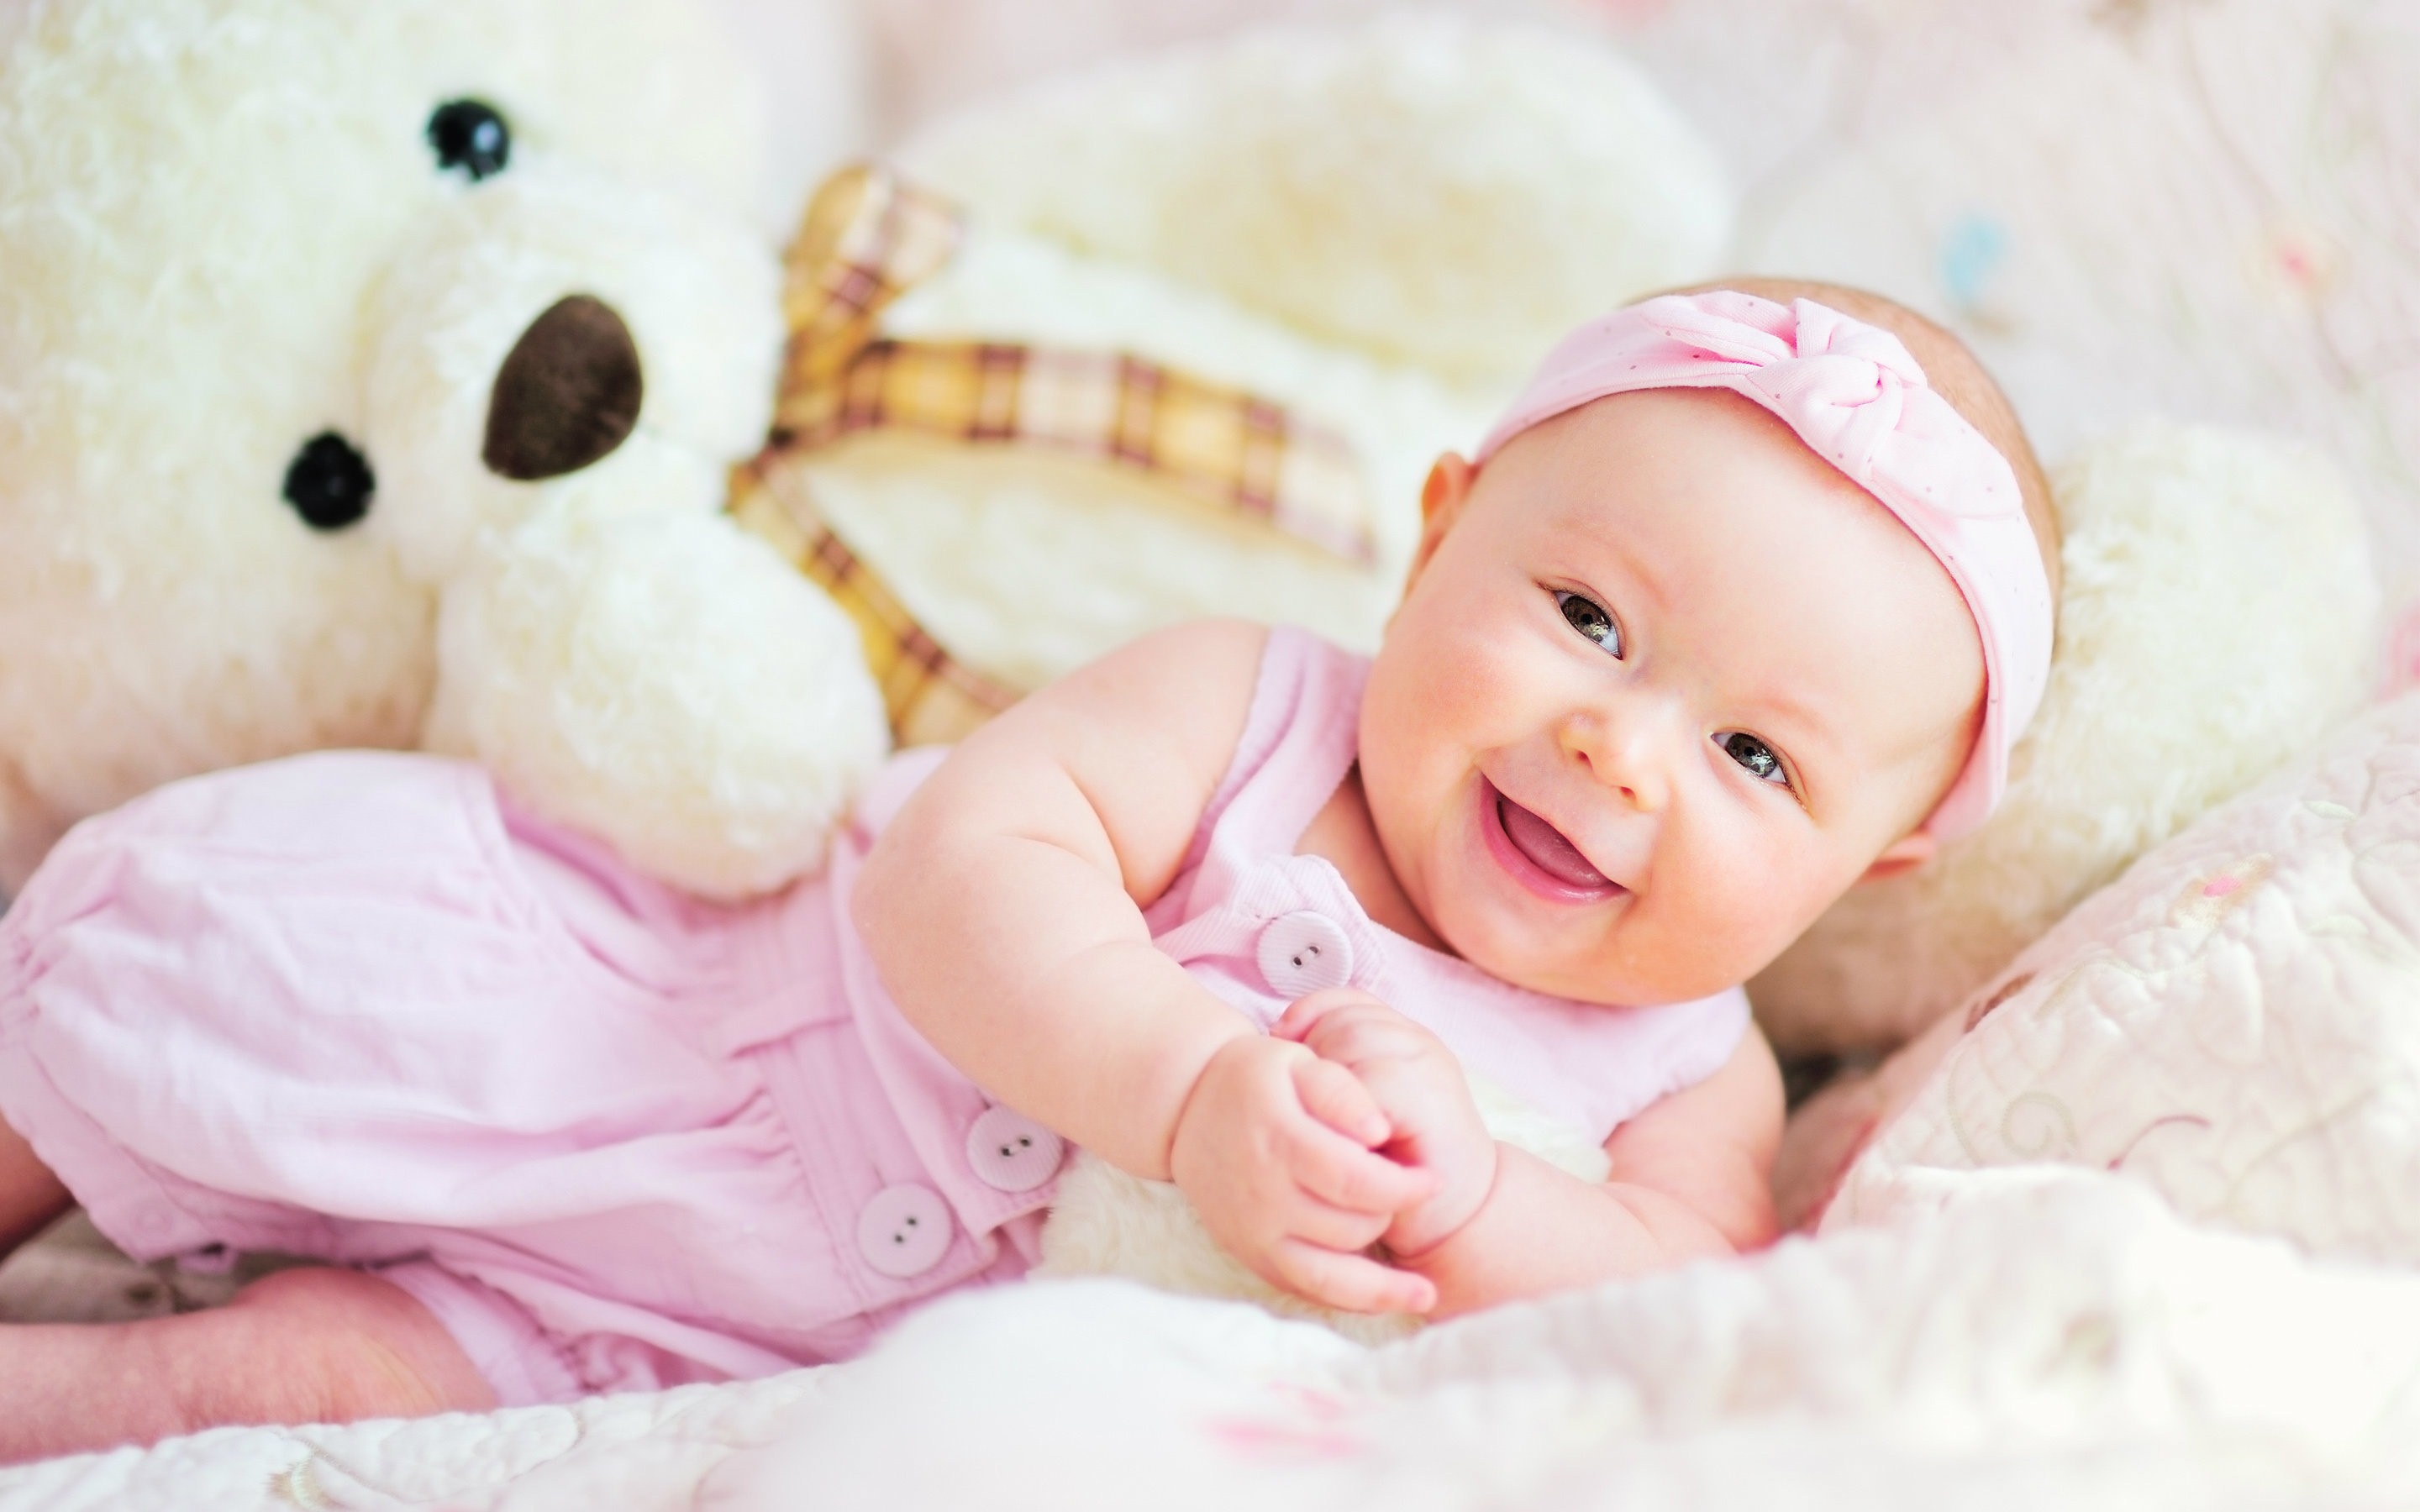 baby wallpaper hd,niño,bebé,rosado,fotografía,producto